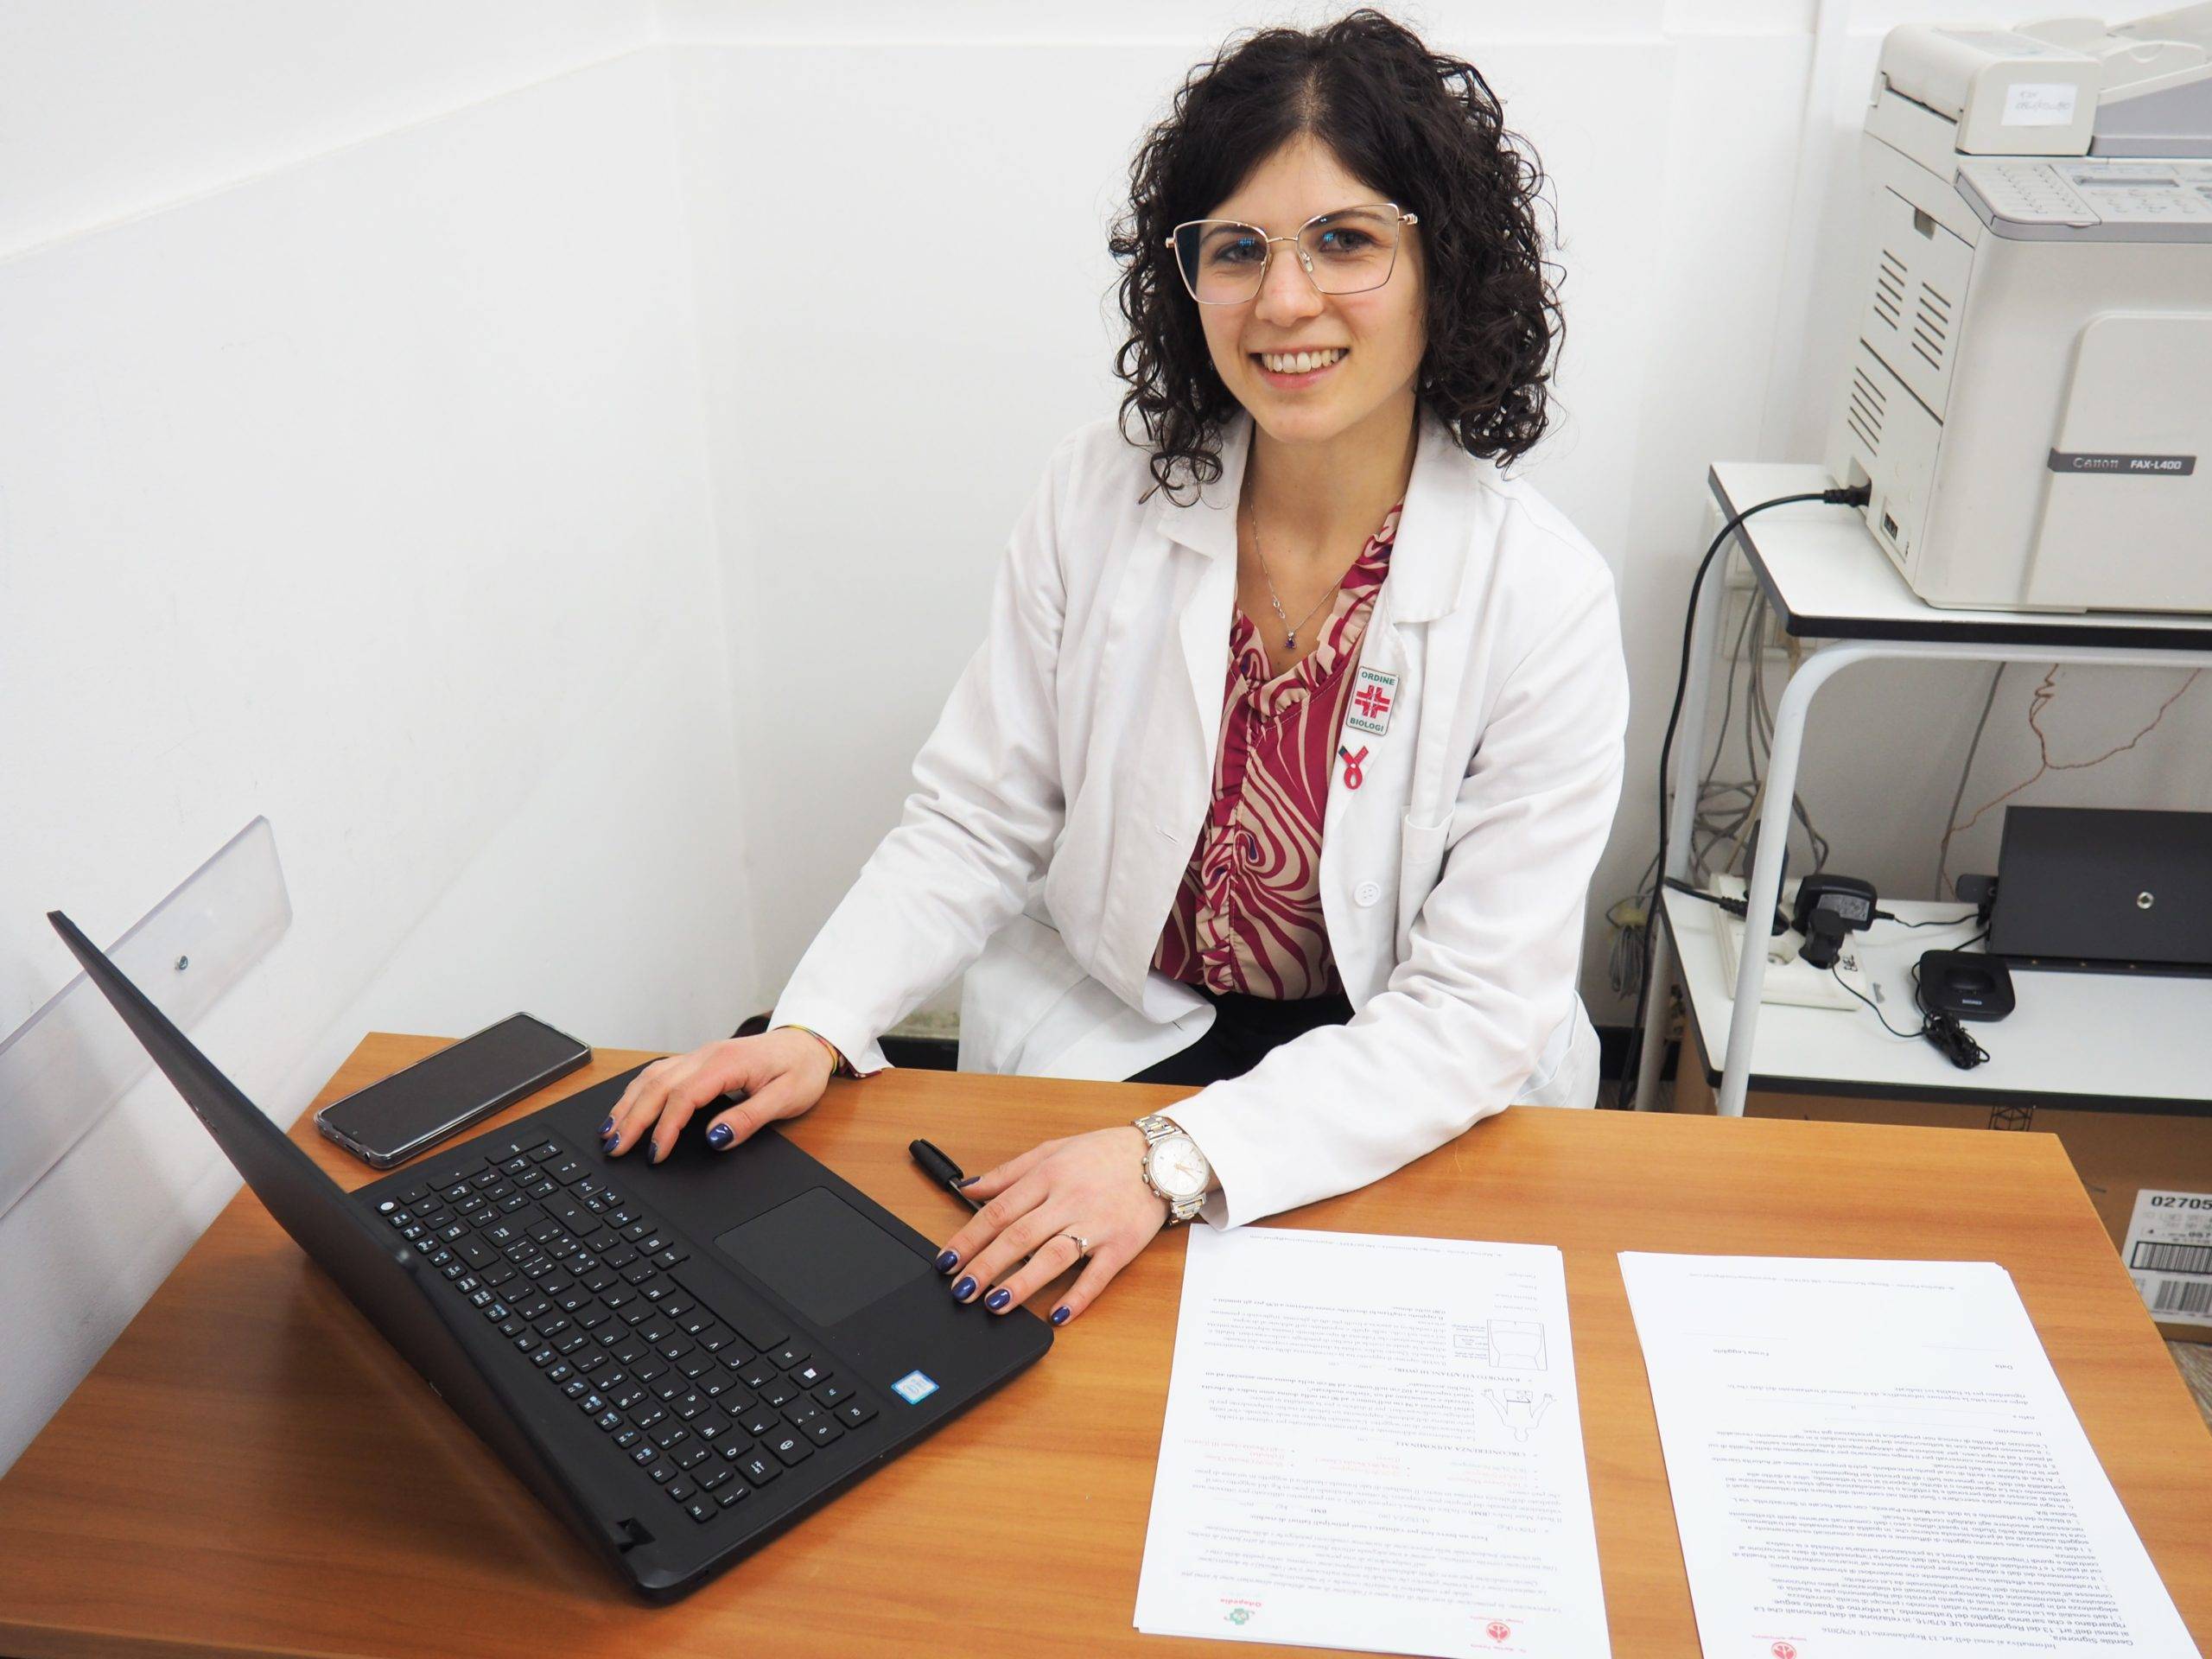 OTR Ortopedia - Collaborazione con la Dott.ssa Martina Parente (nutrizionista/biologa)